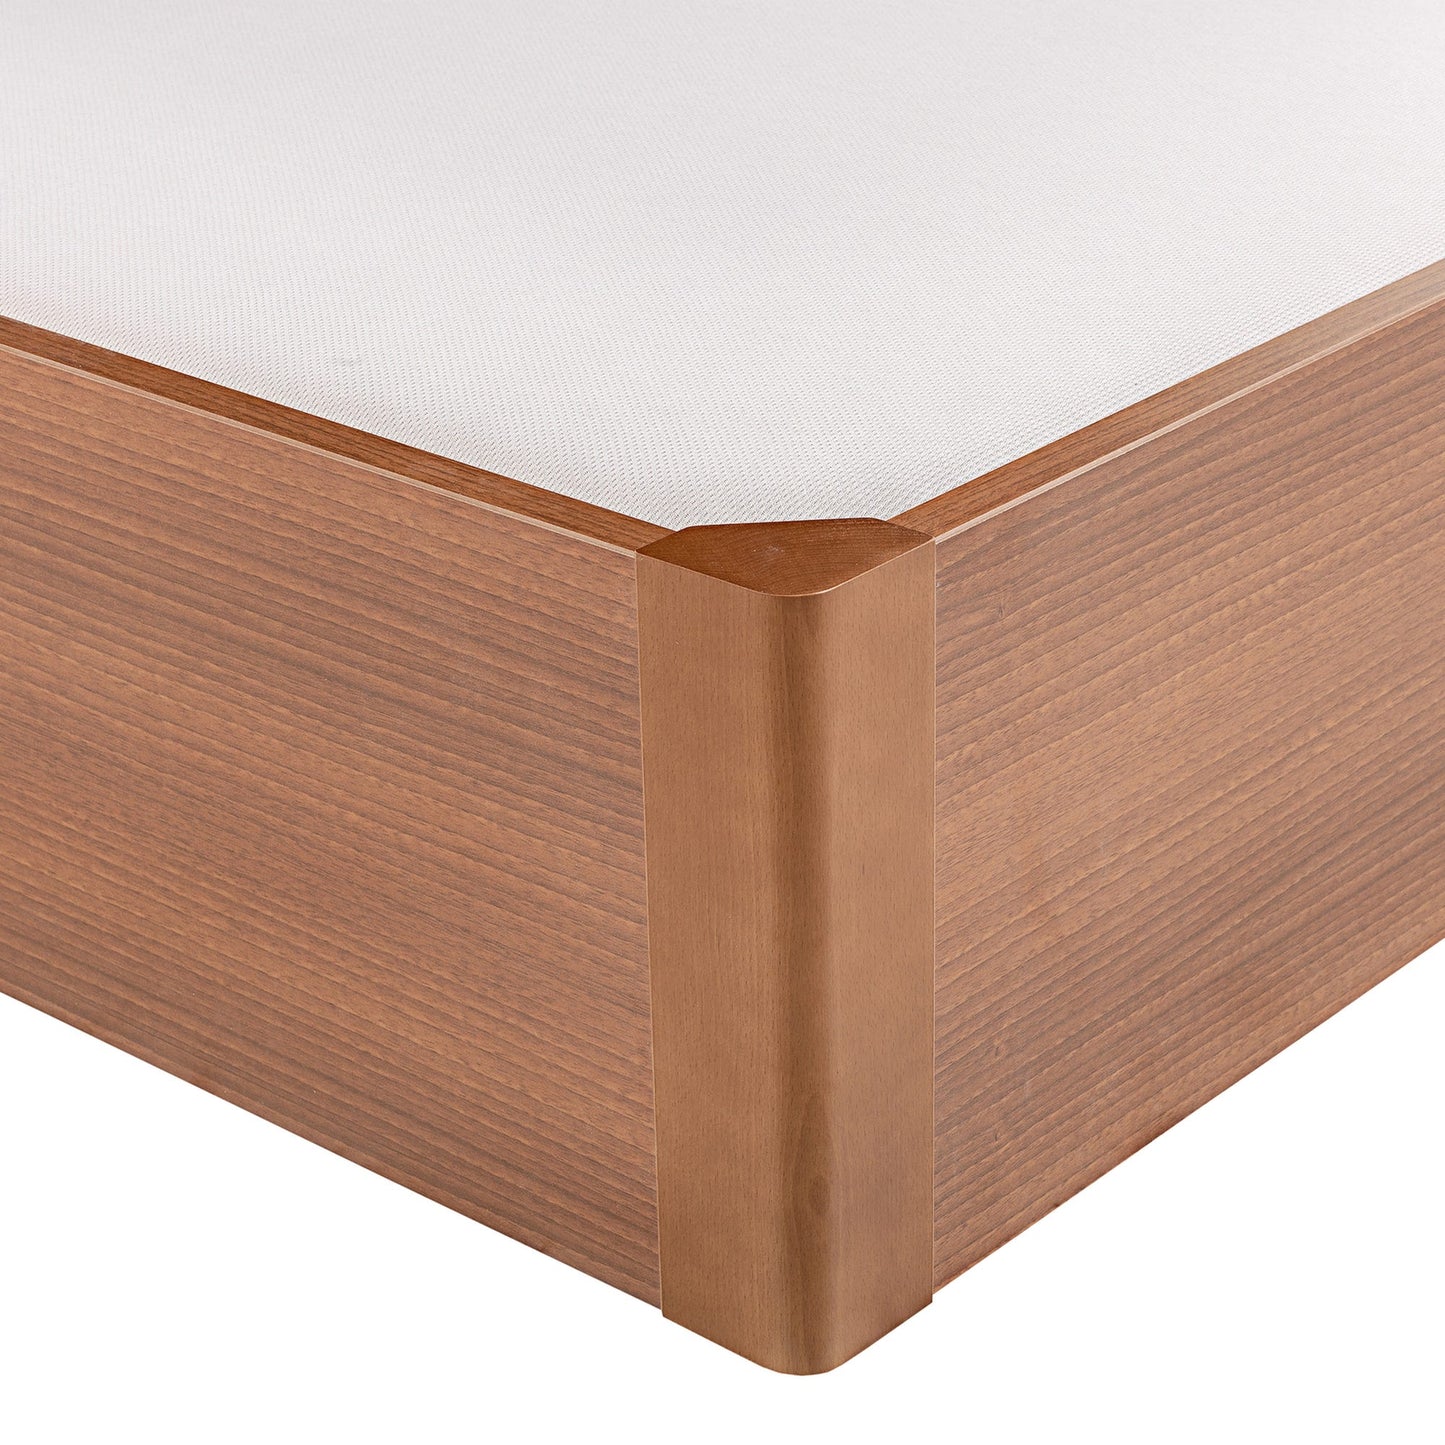 Canapé abatible de madera tapa única de color cerezo - DESIGN - 150x200